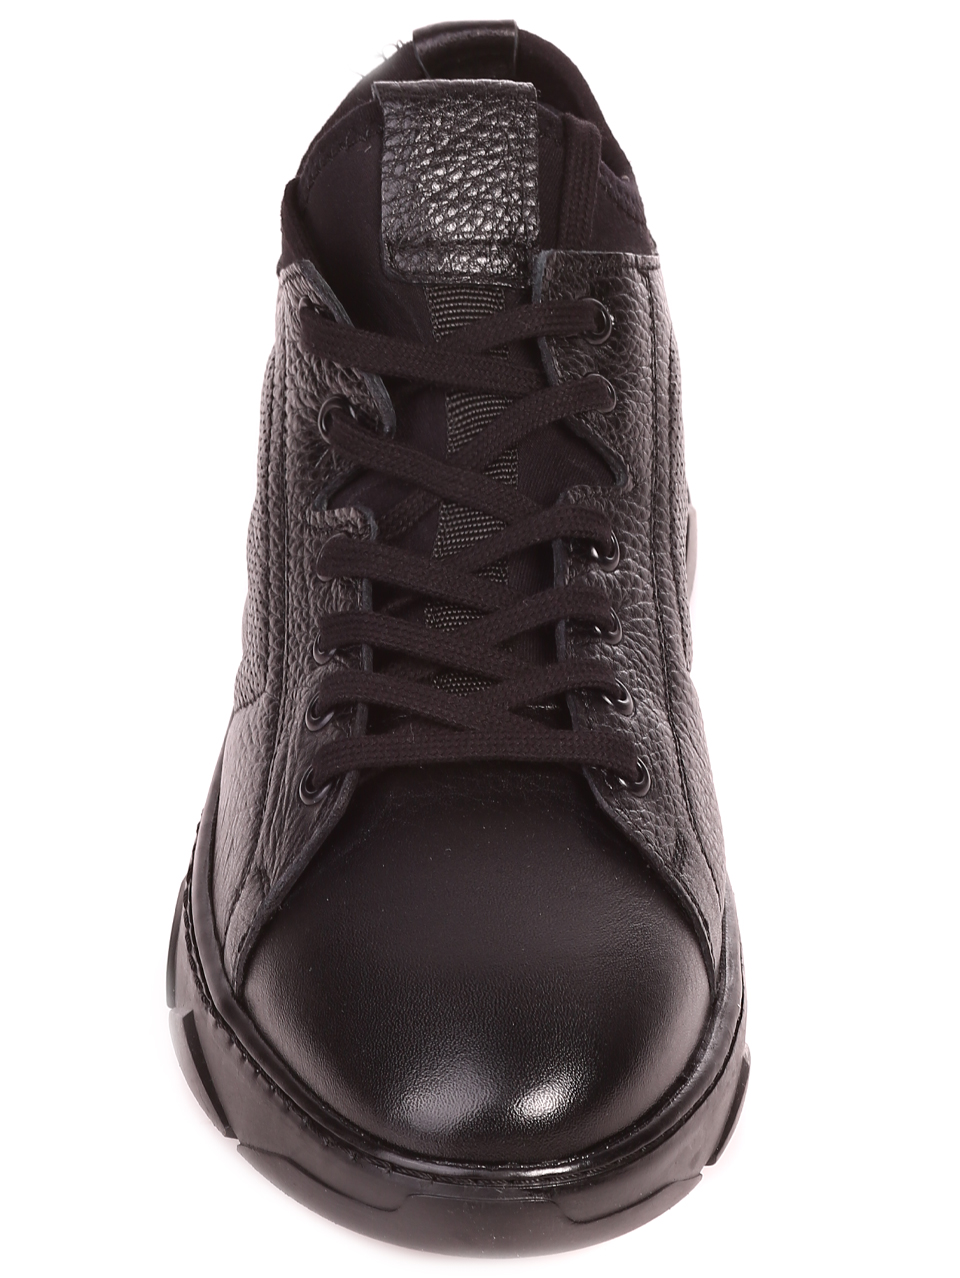 Ежедневни мъжки обувки от естествена кожа в черно 7AT-23783 black